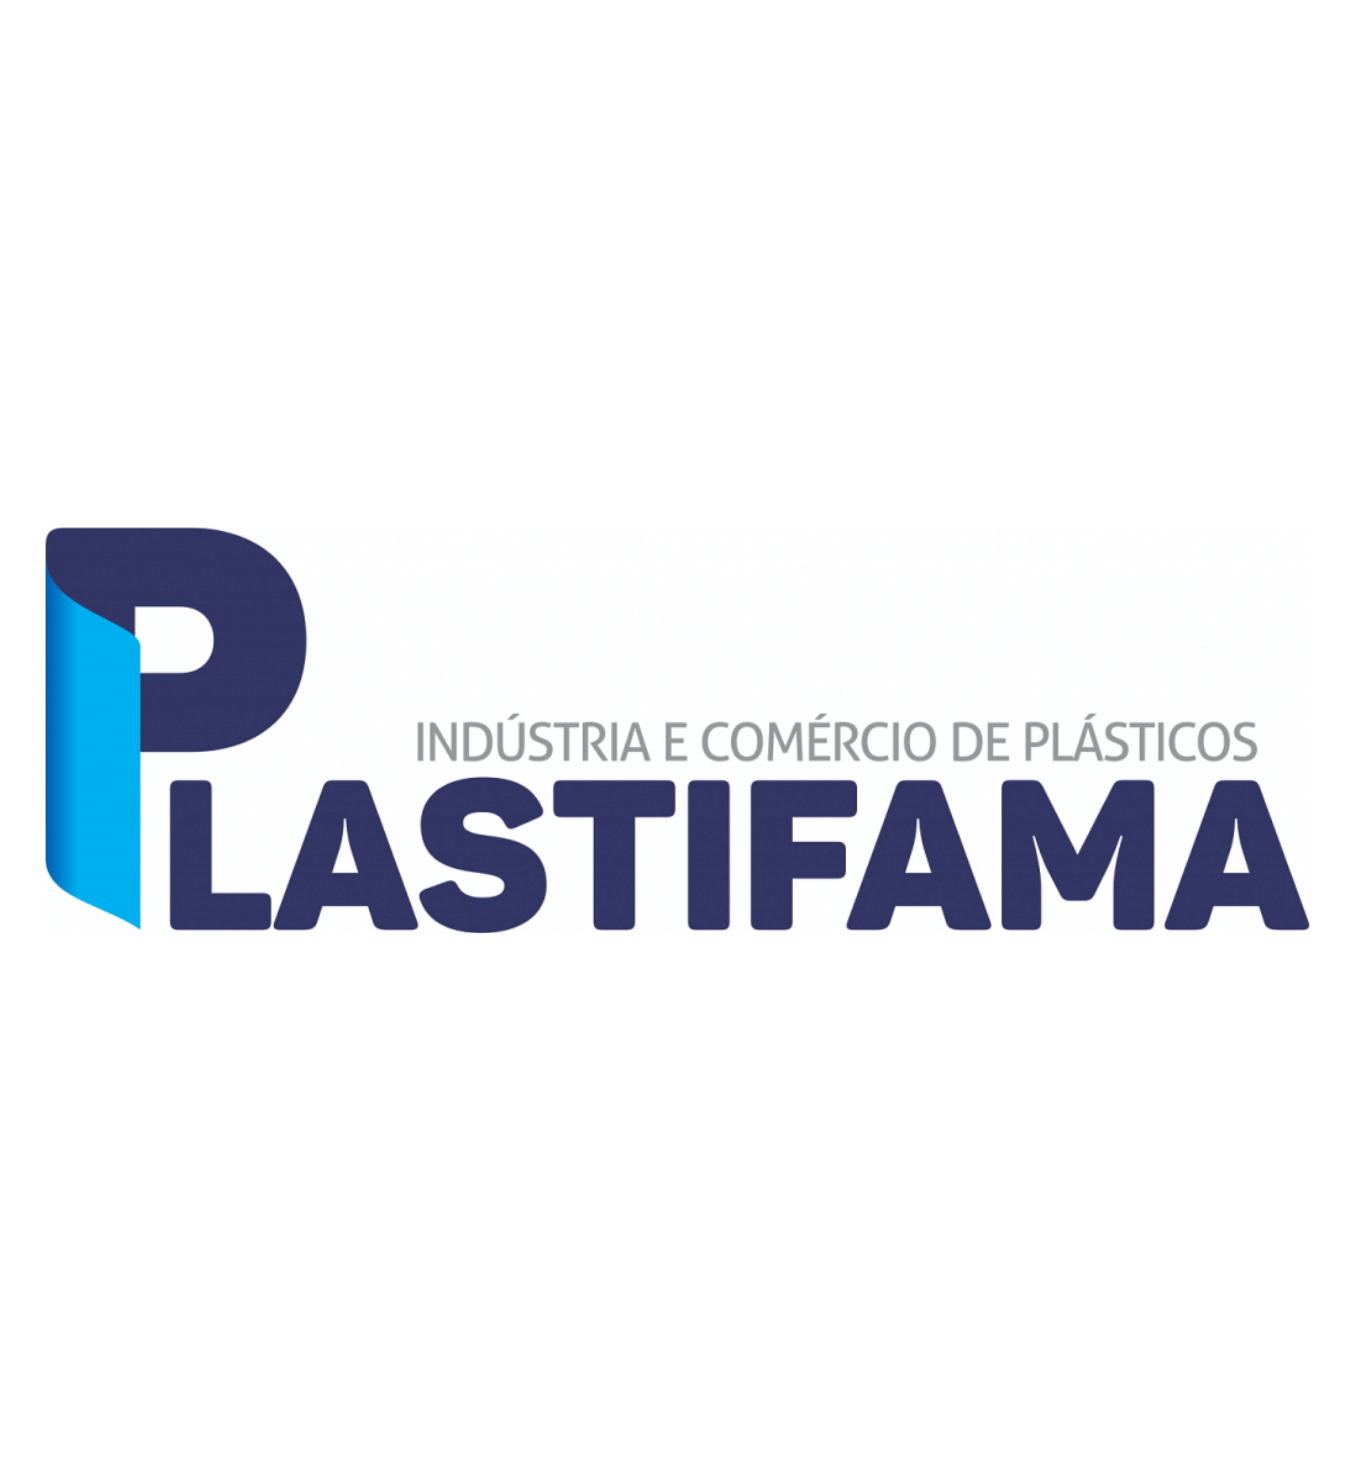 Logo Plastifama